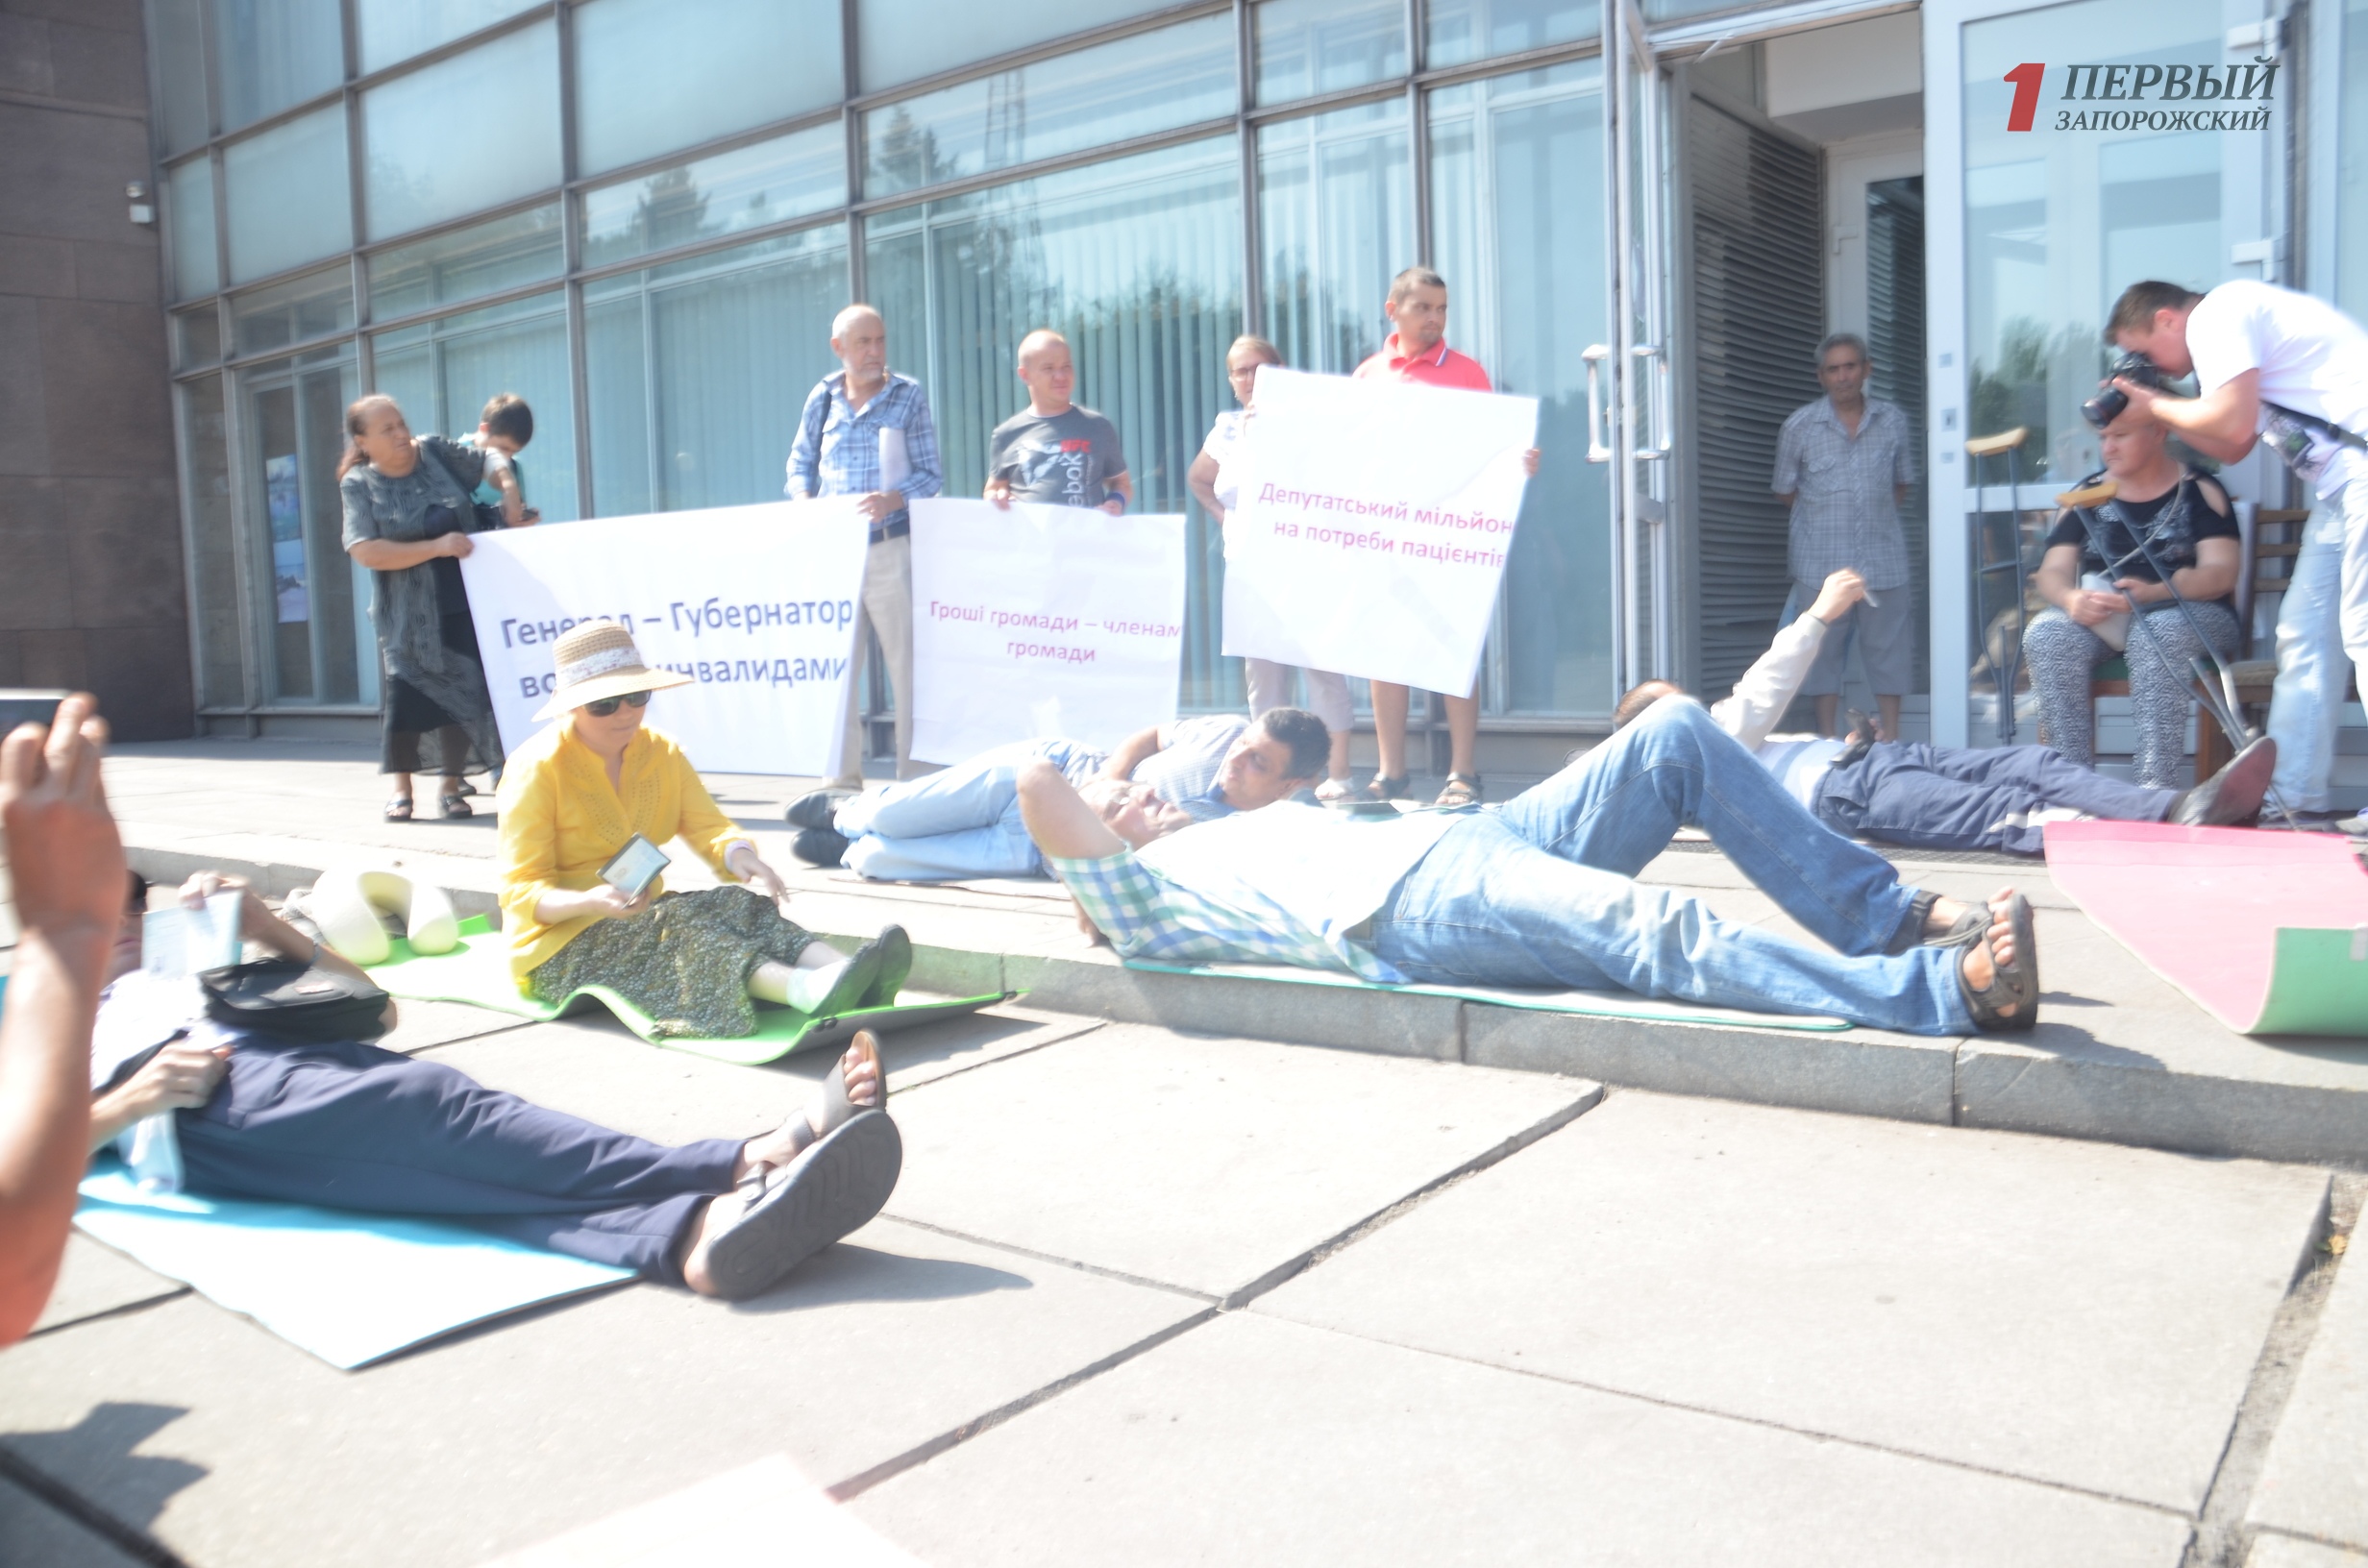 Под стенами областного совета пациенты-диализники устроили лежачий протест - ФОТО